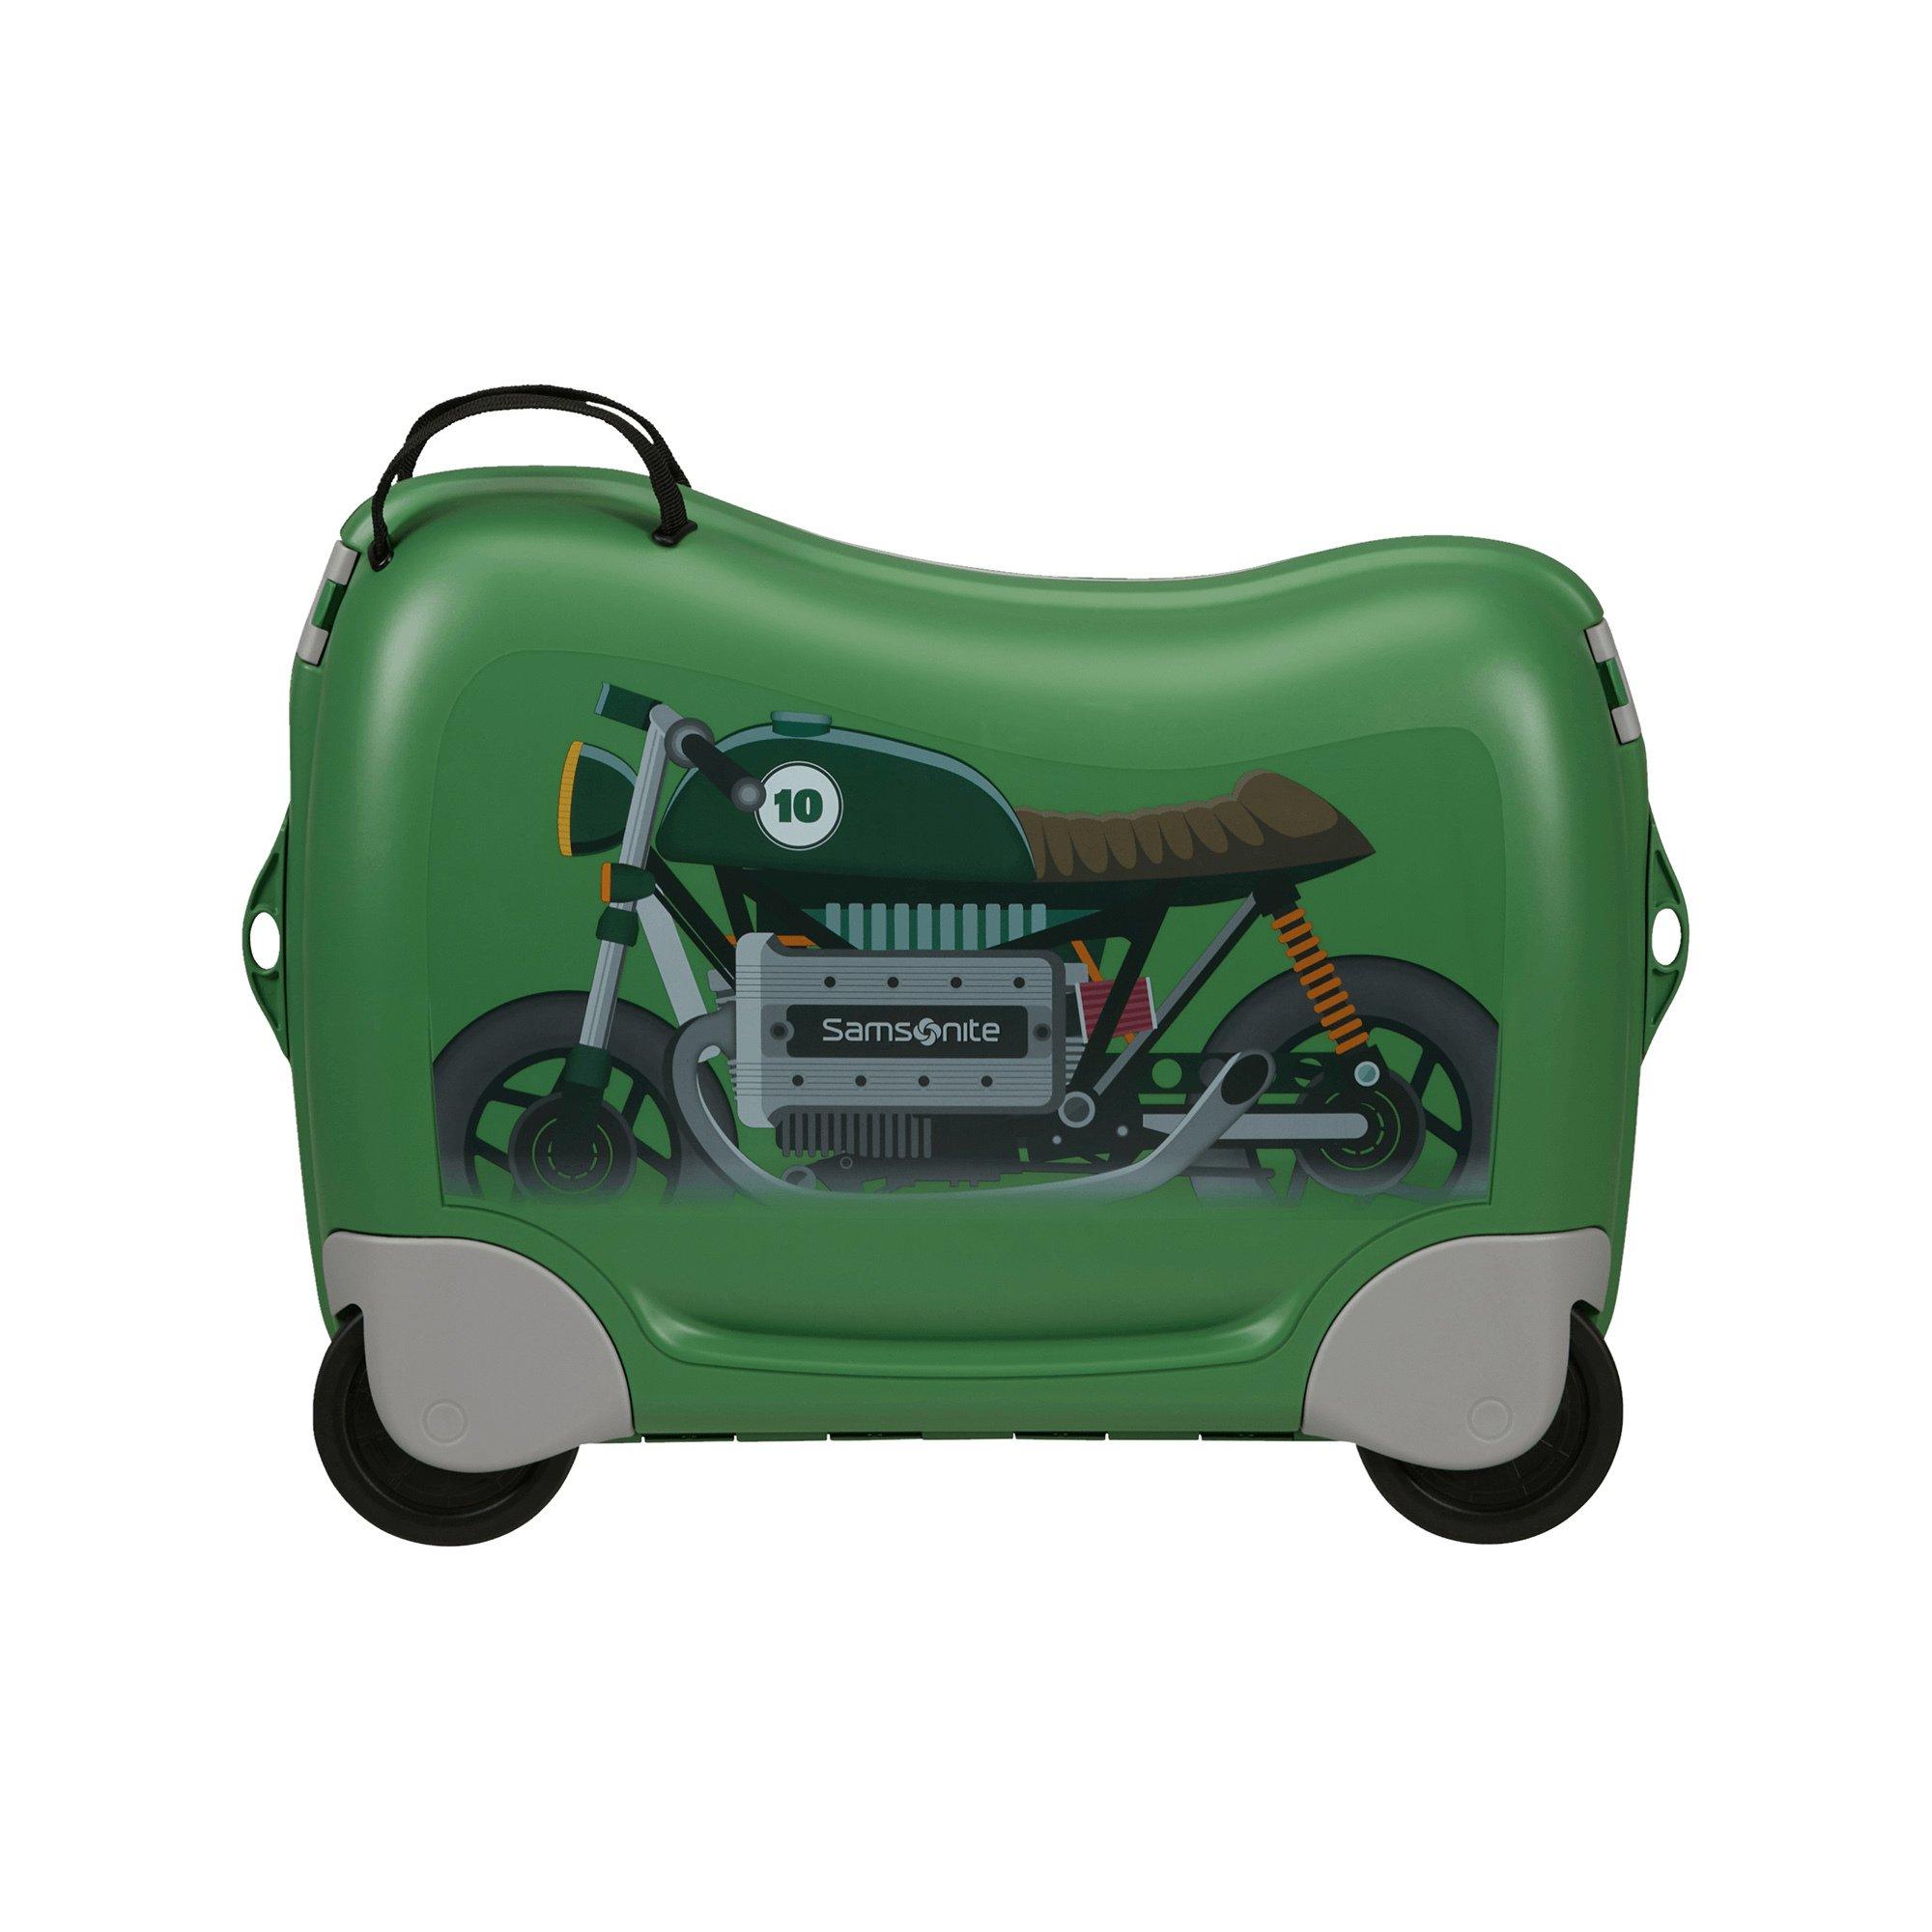 Samsonite 52.0cm, valise d'enfant Dream2go Bike 